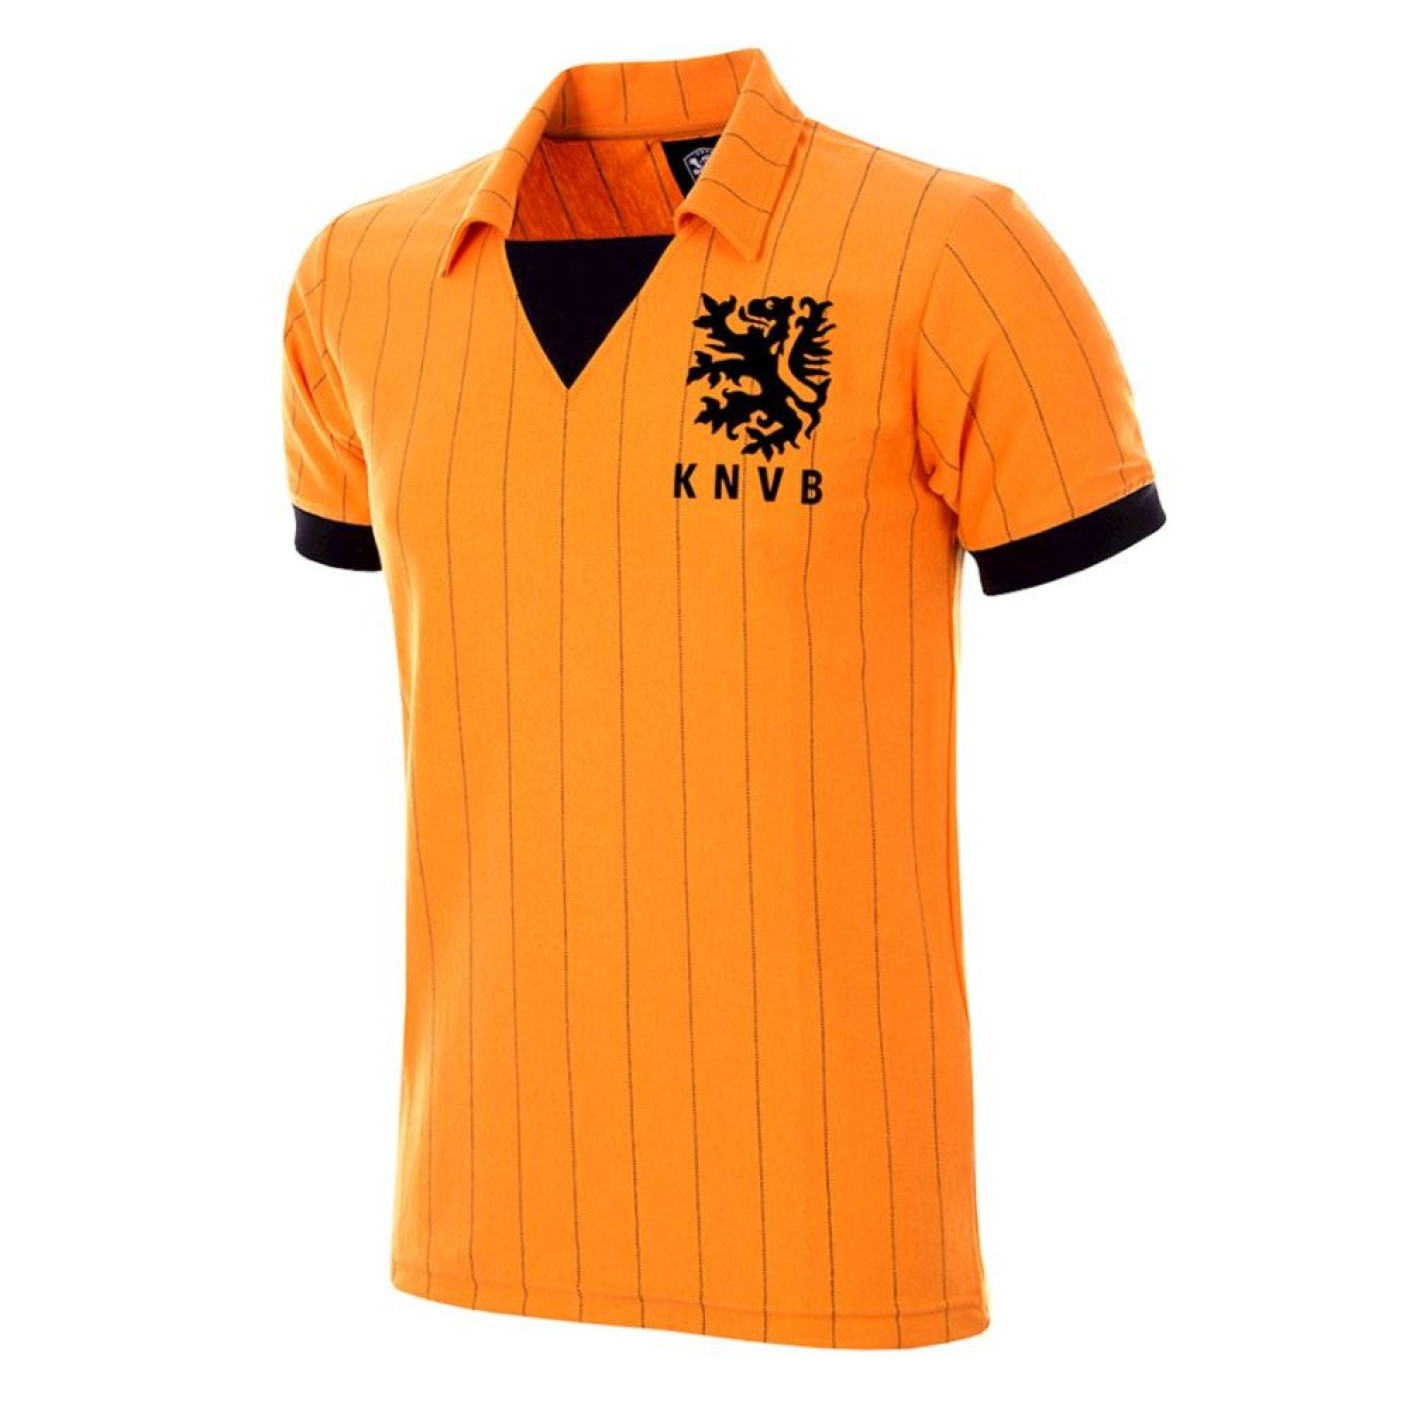 COPA Nederland 1983 Retro Football Shirt